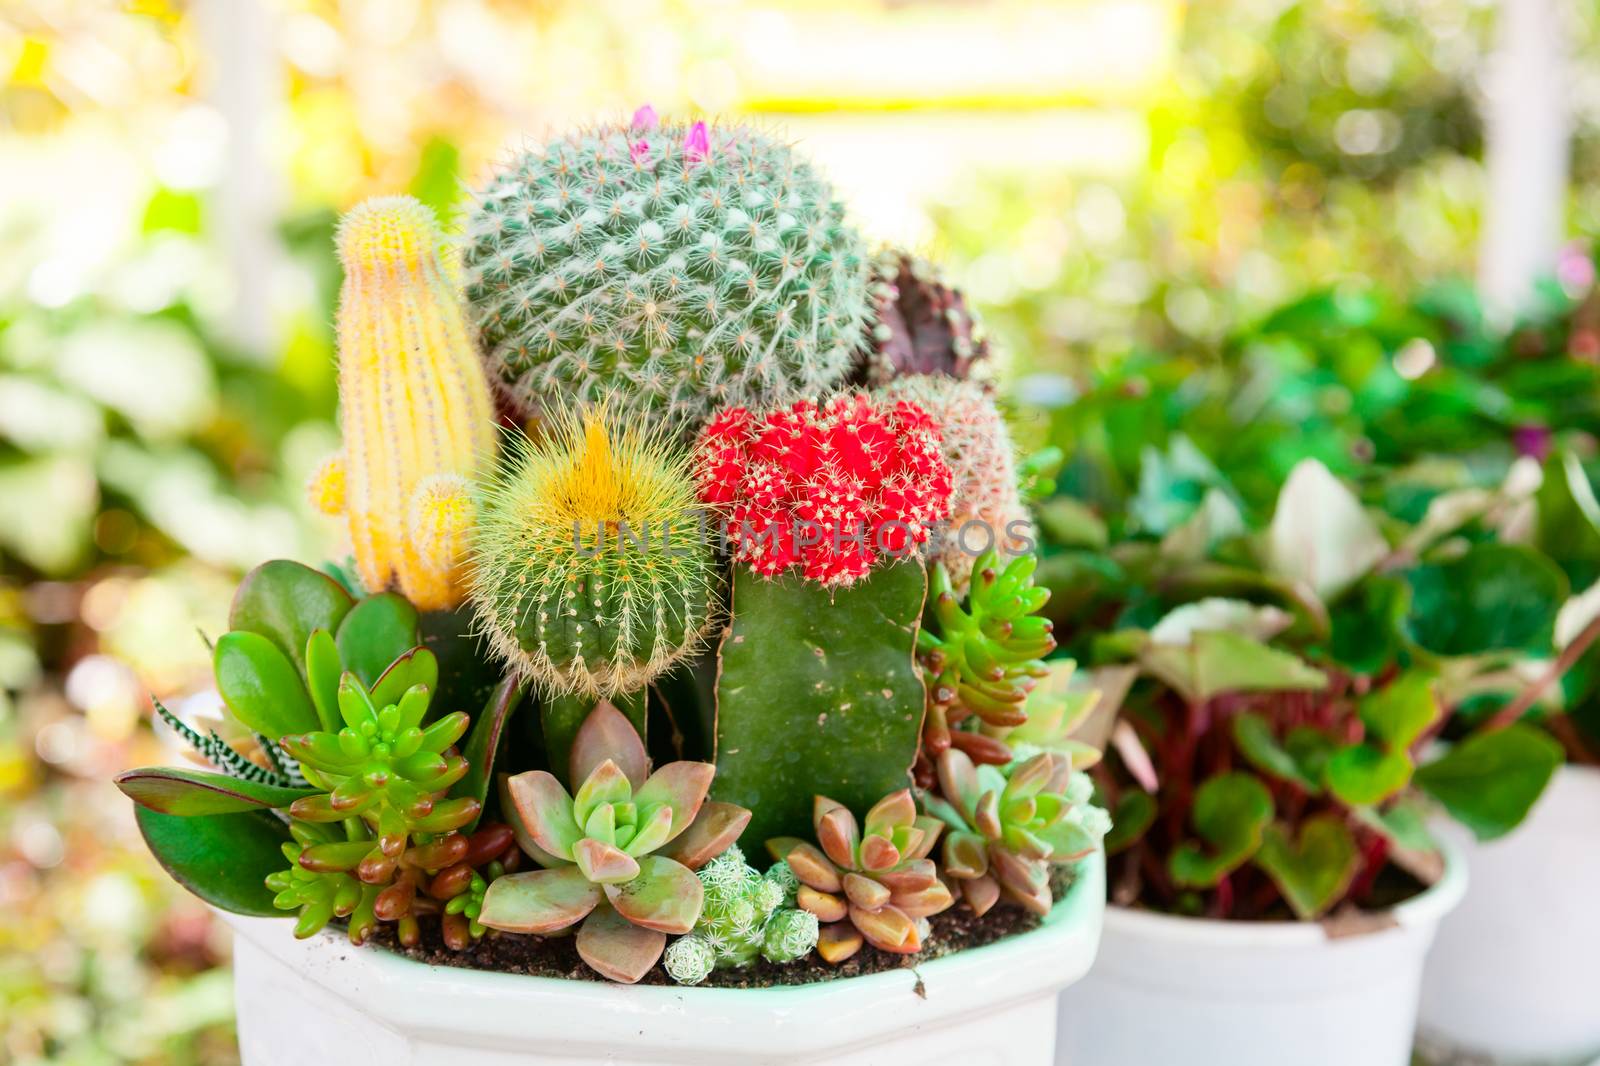 Tabletop cactus garden by naumoid